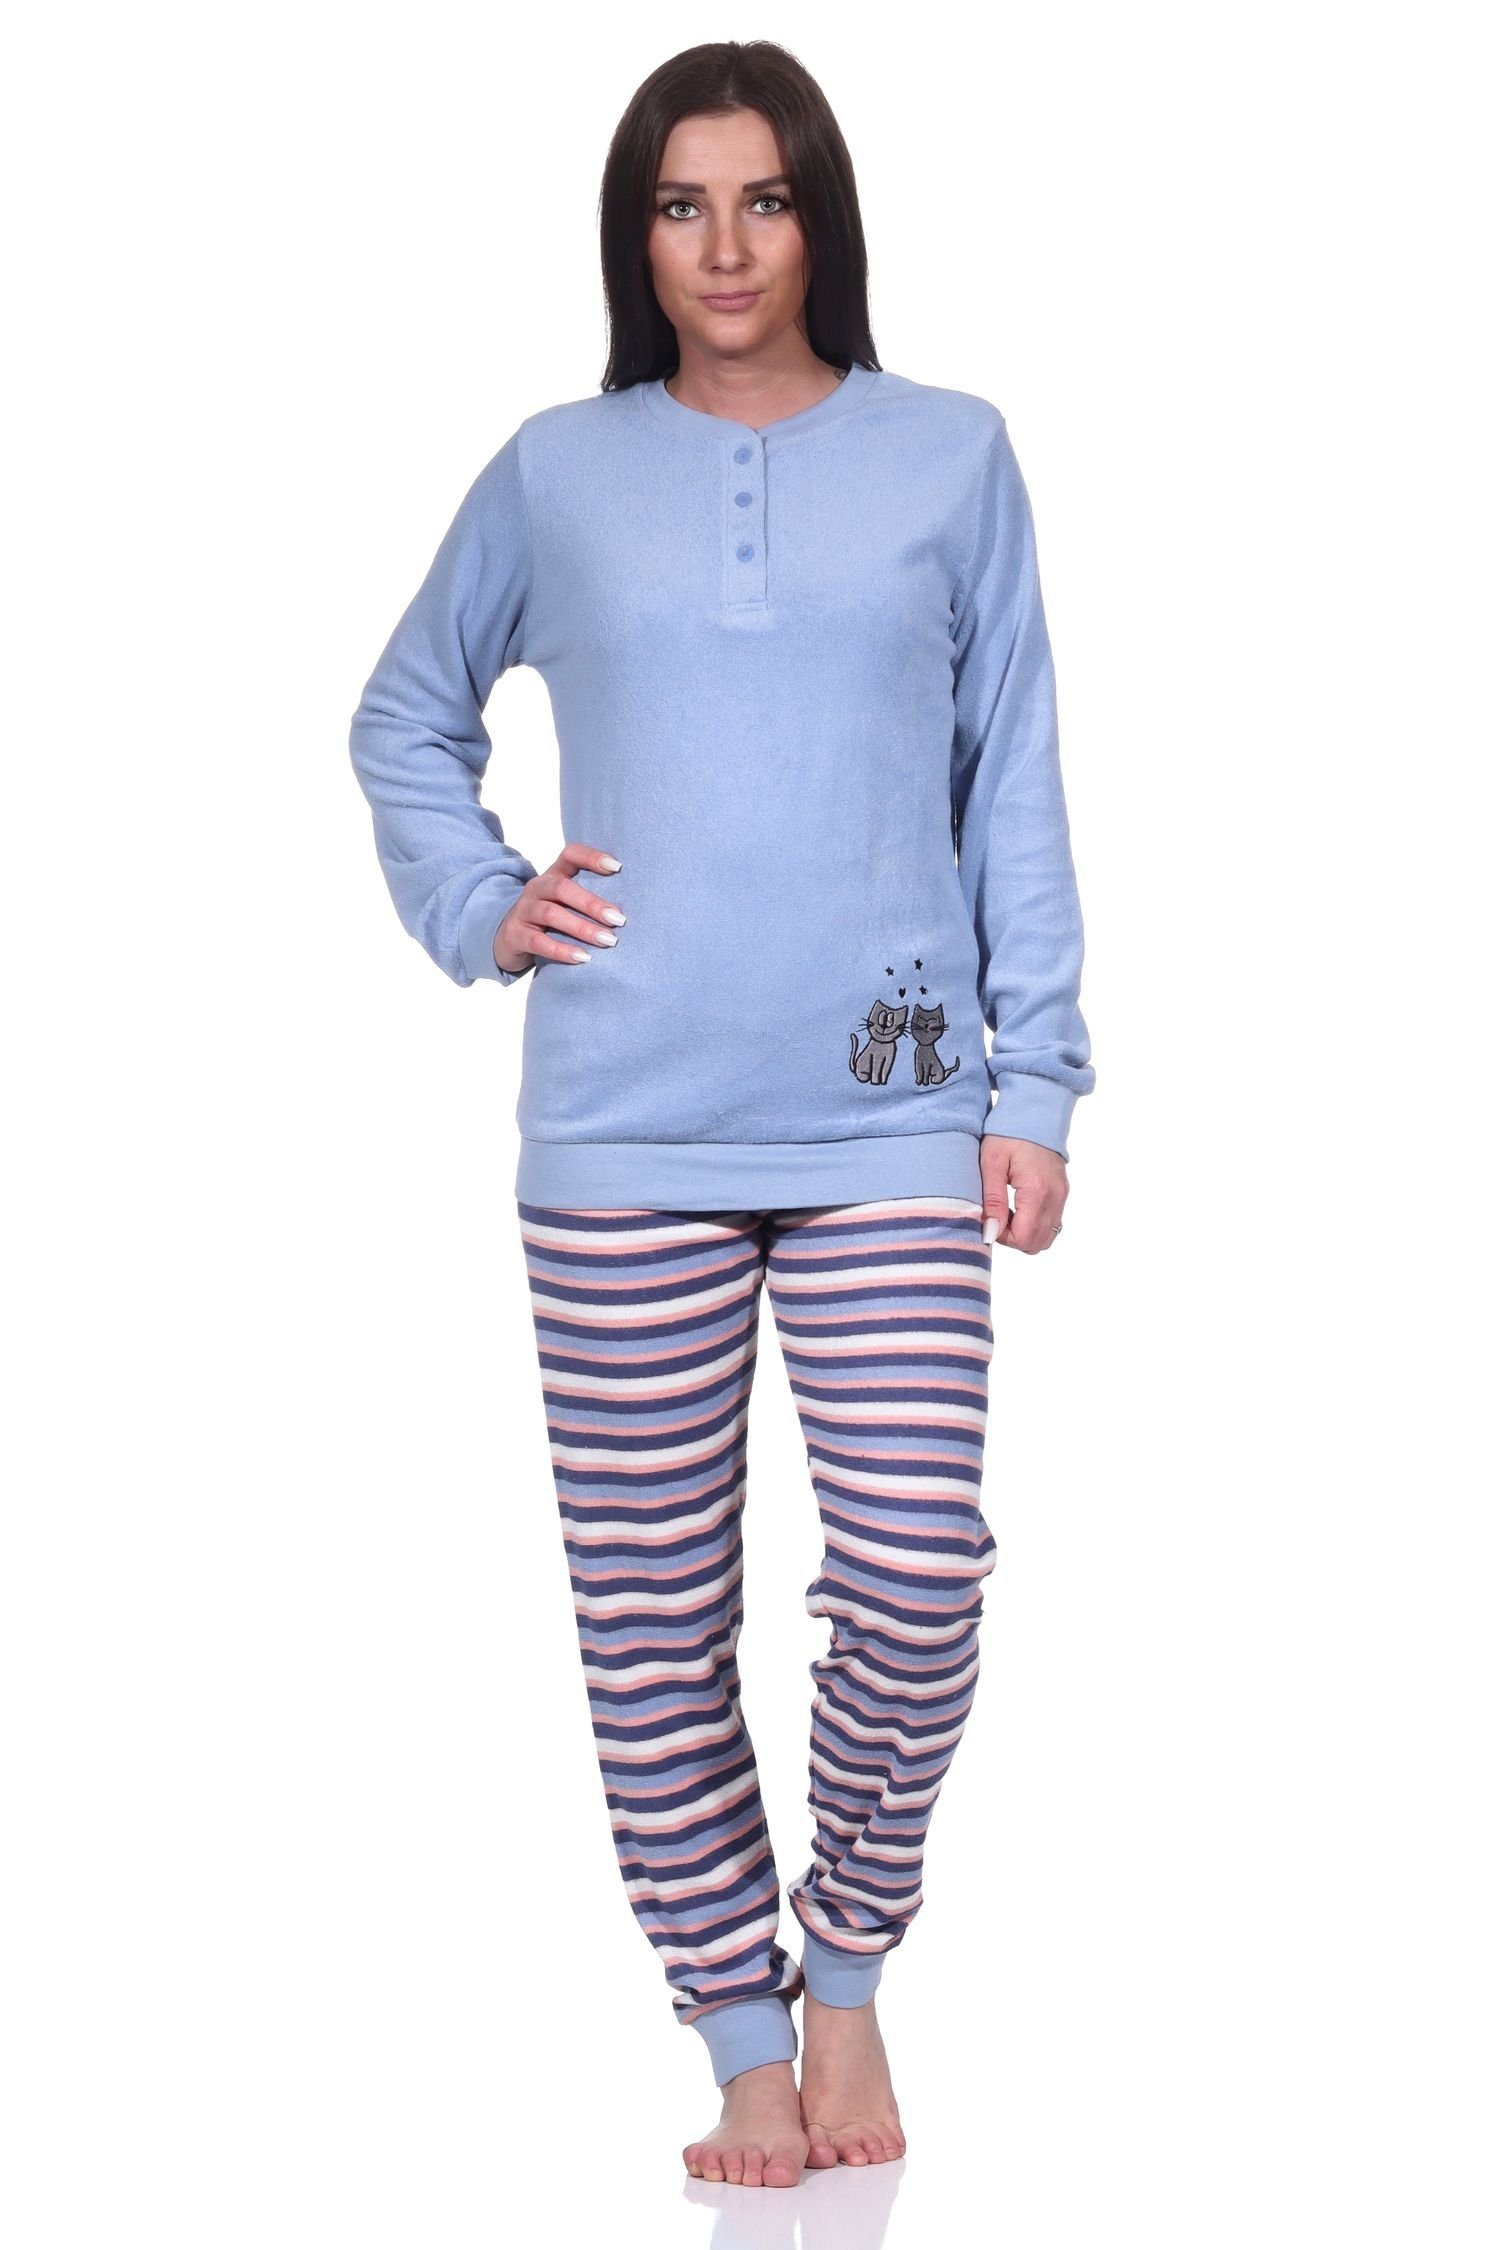 Normann hellblau Pyjama, langarm Frottee Schlafanzug mit süßem Pyjama Damen Katzen-Motiv